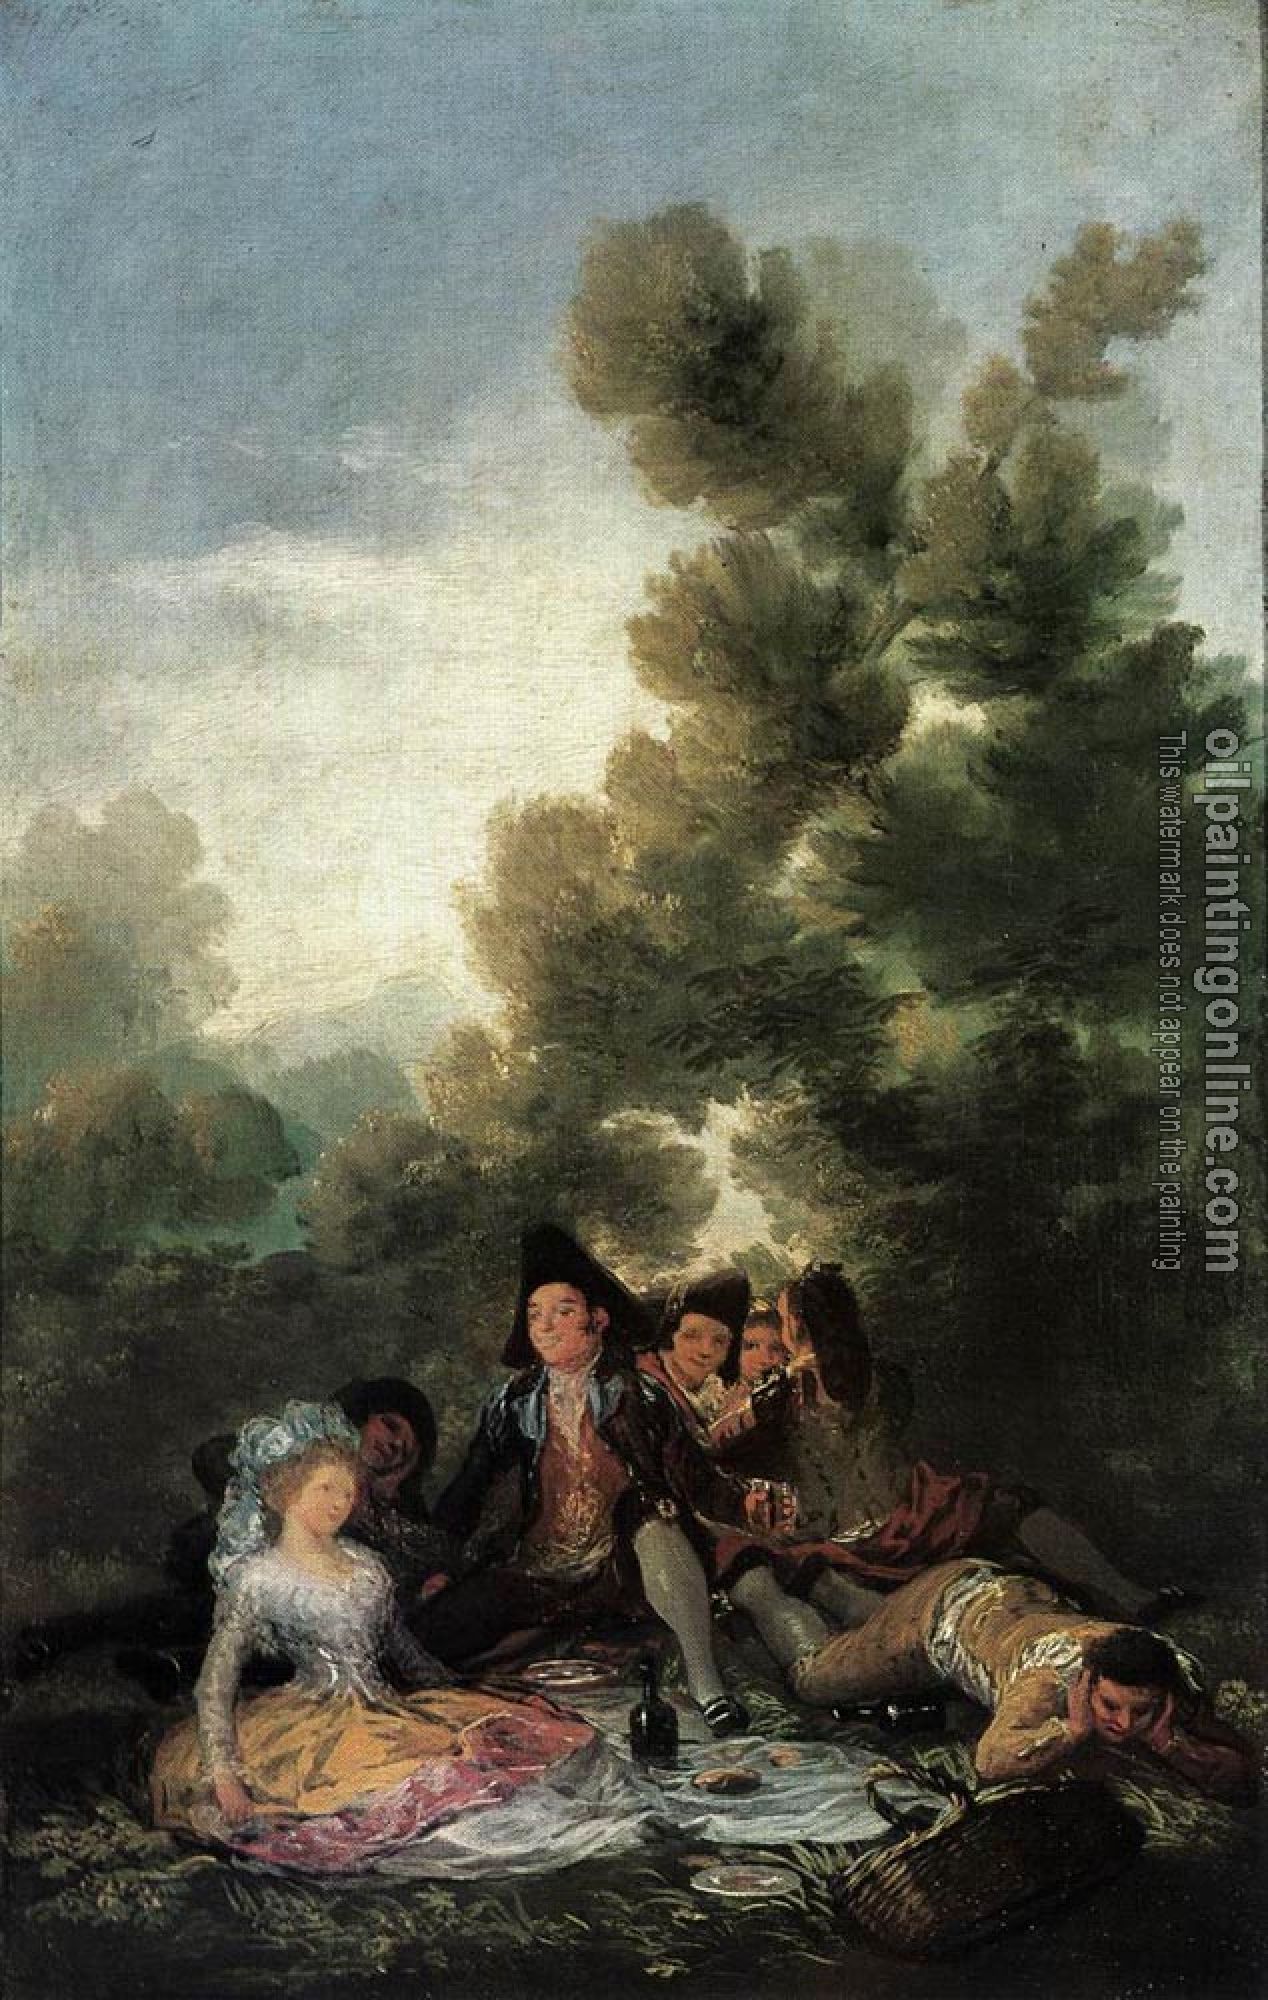 Goya, Francisco de - Picnic